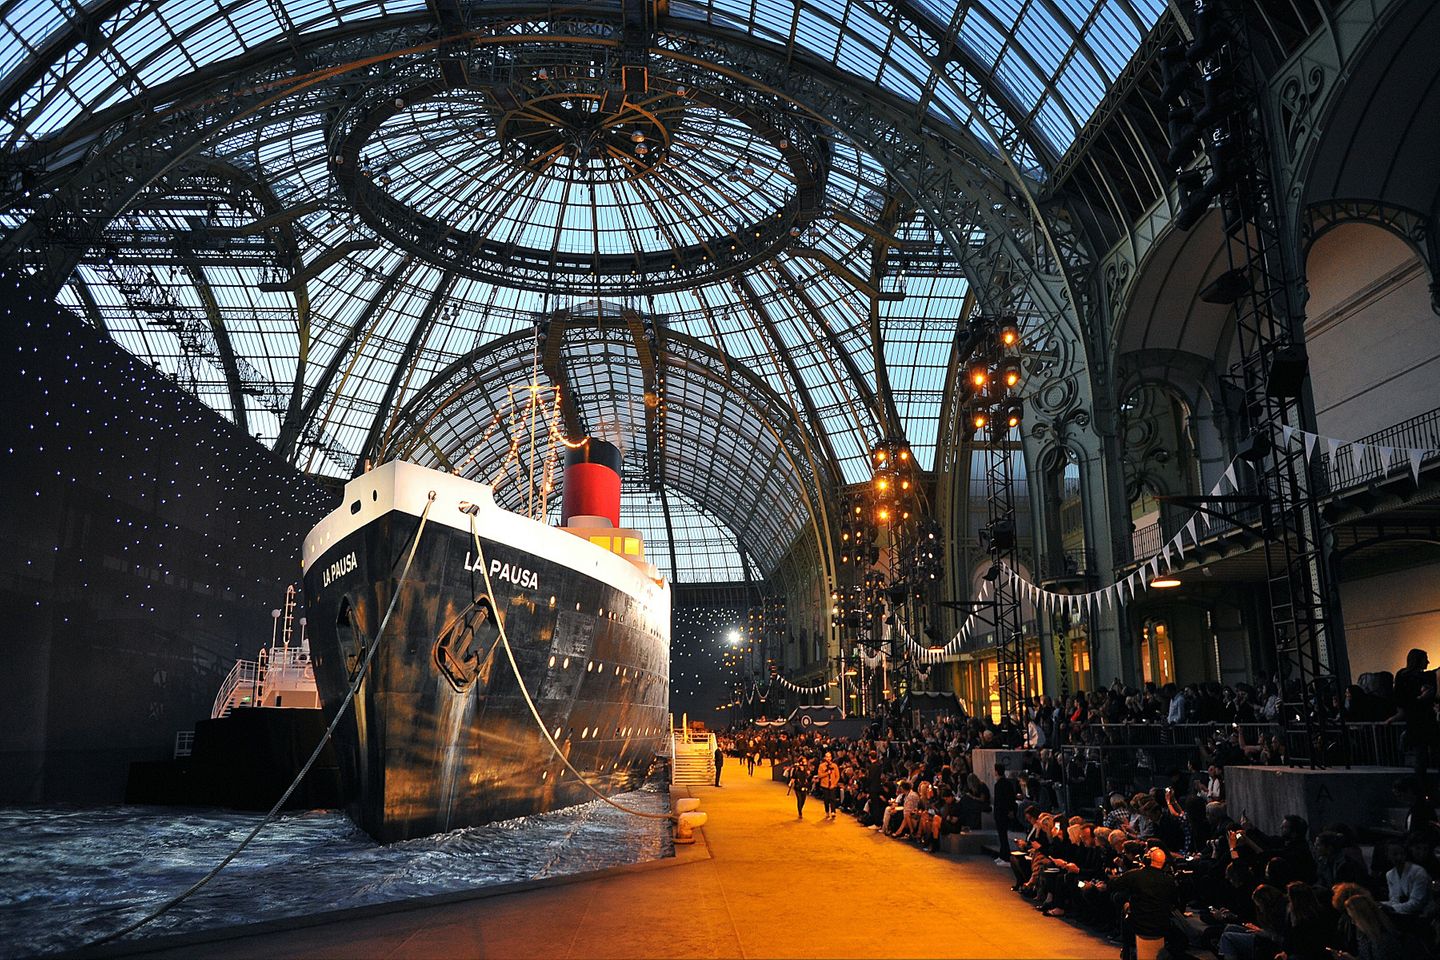 Karl Lagerfeld überrascht jedesmal aufs Neue mit den Kulissen, die er für seine Kollektionen im Pariser Grand Palais entwirft. Diesmal nimmt er seine Gäste passend zur Präsentation der neuen Cruise Collection mit auf Kreuzfahrt.